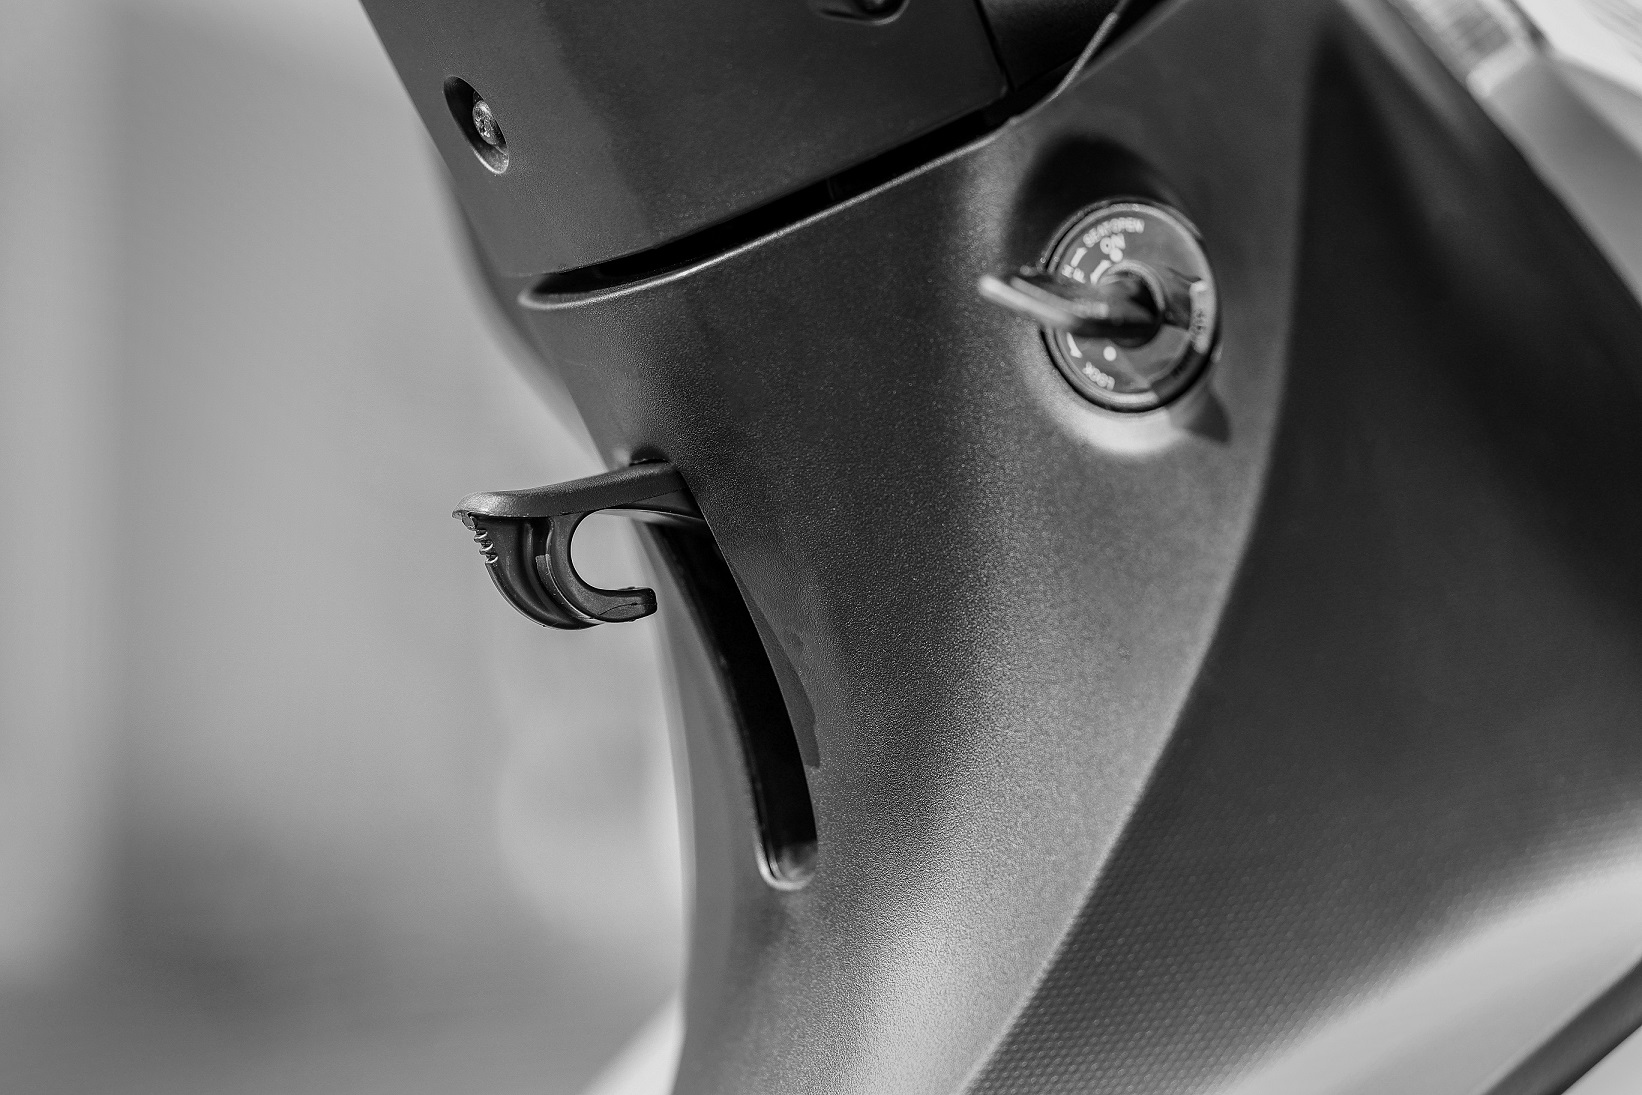 Detalhe do gancho para pendurar sacolas da Honda Biz 125 2023 prata fosco com preto